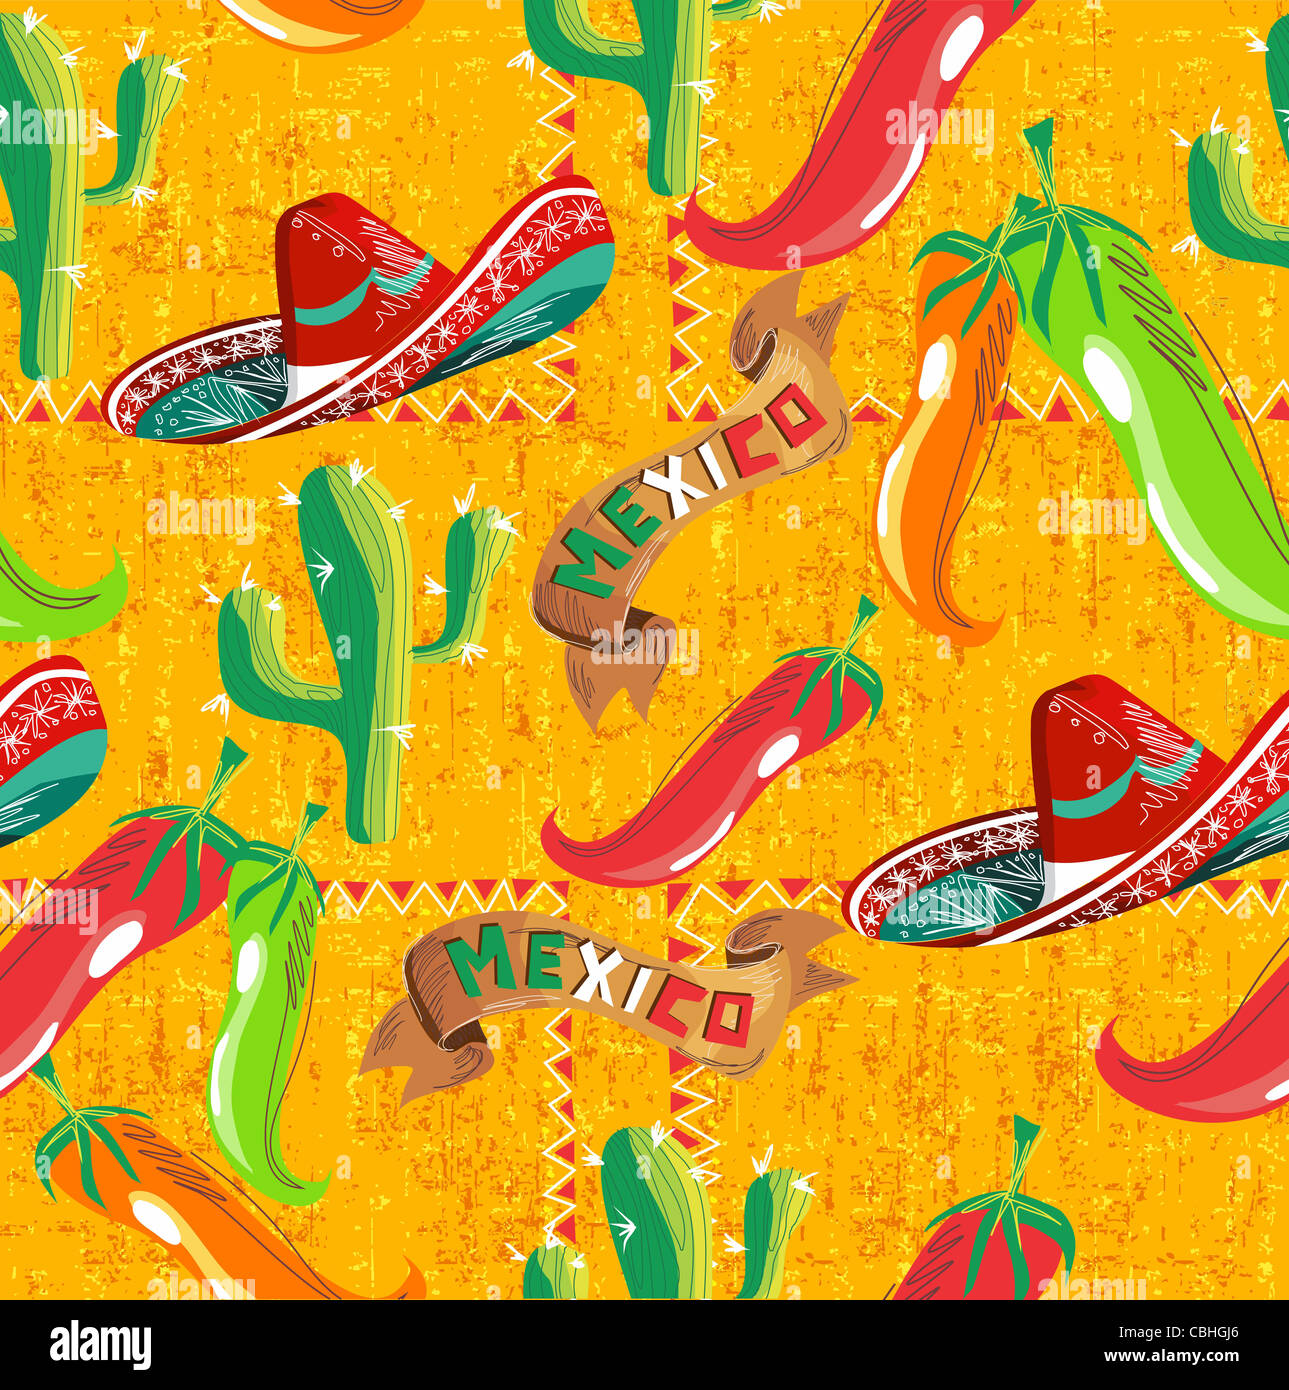 Motif mexicain avec cactus, hat and chill illustration over grunge background. Utile pour la conception de menus. Banque D'Images